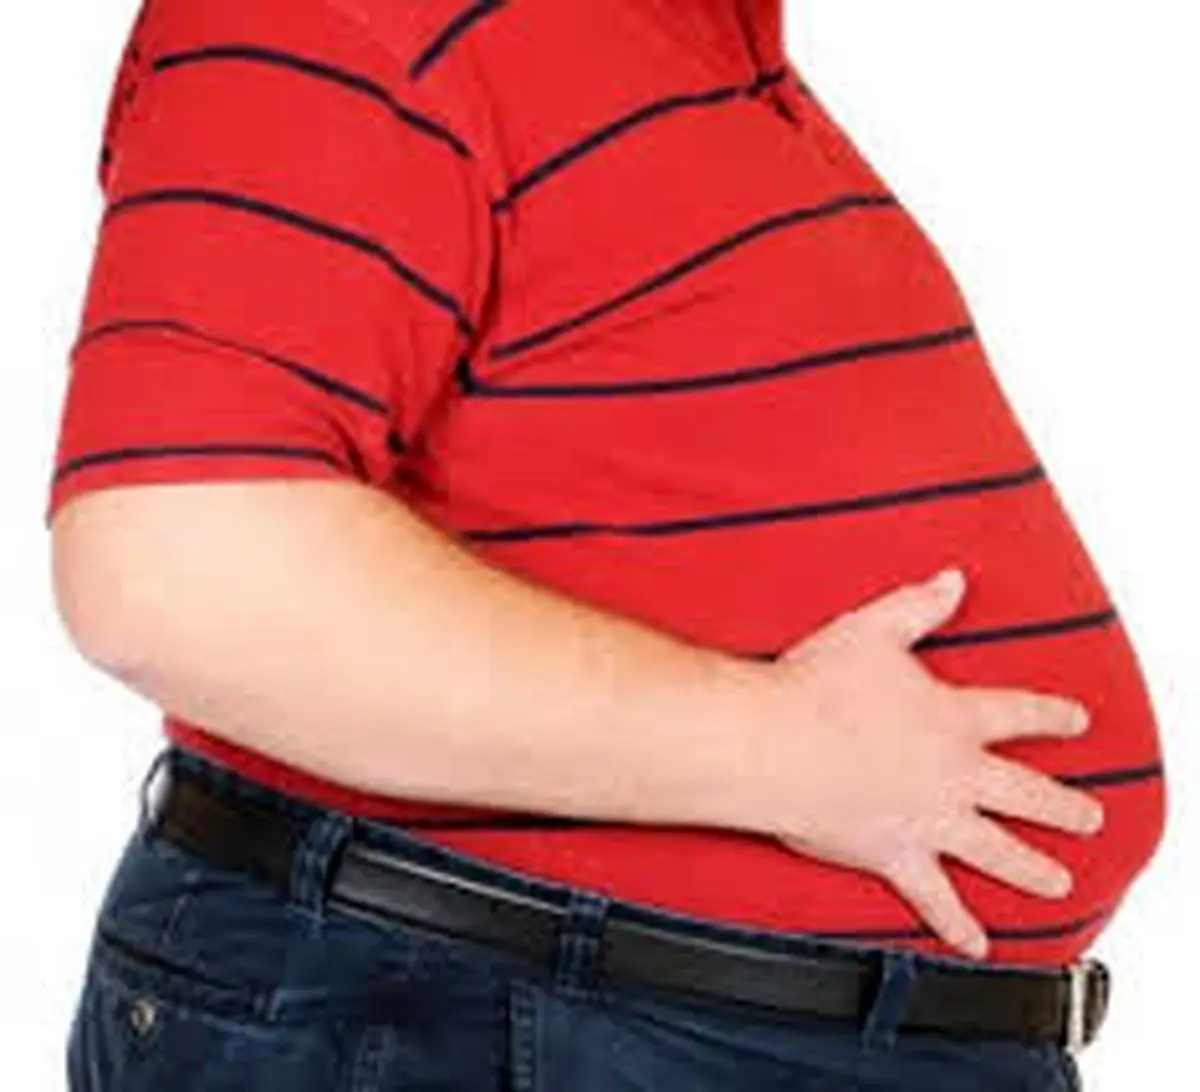 
اضافه وزن کُشنده است / مردان بیشتر مراقب باشند
